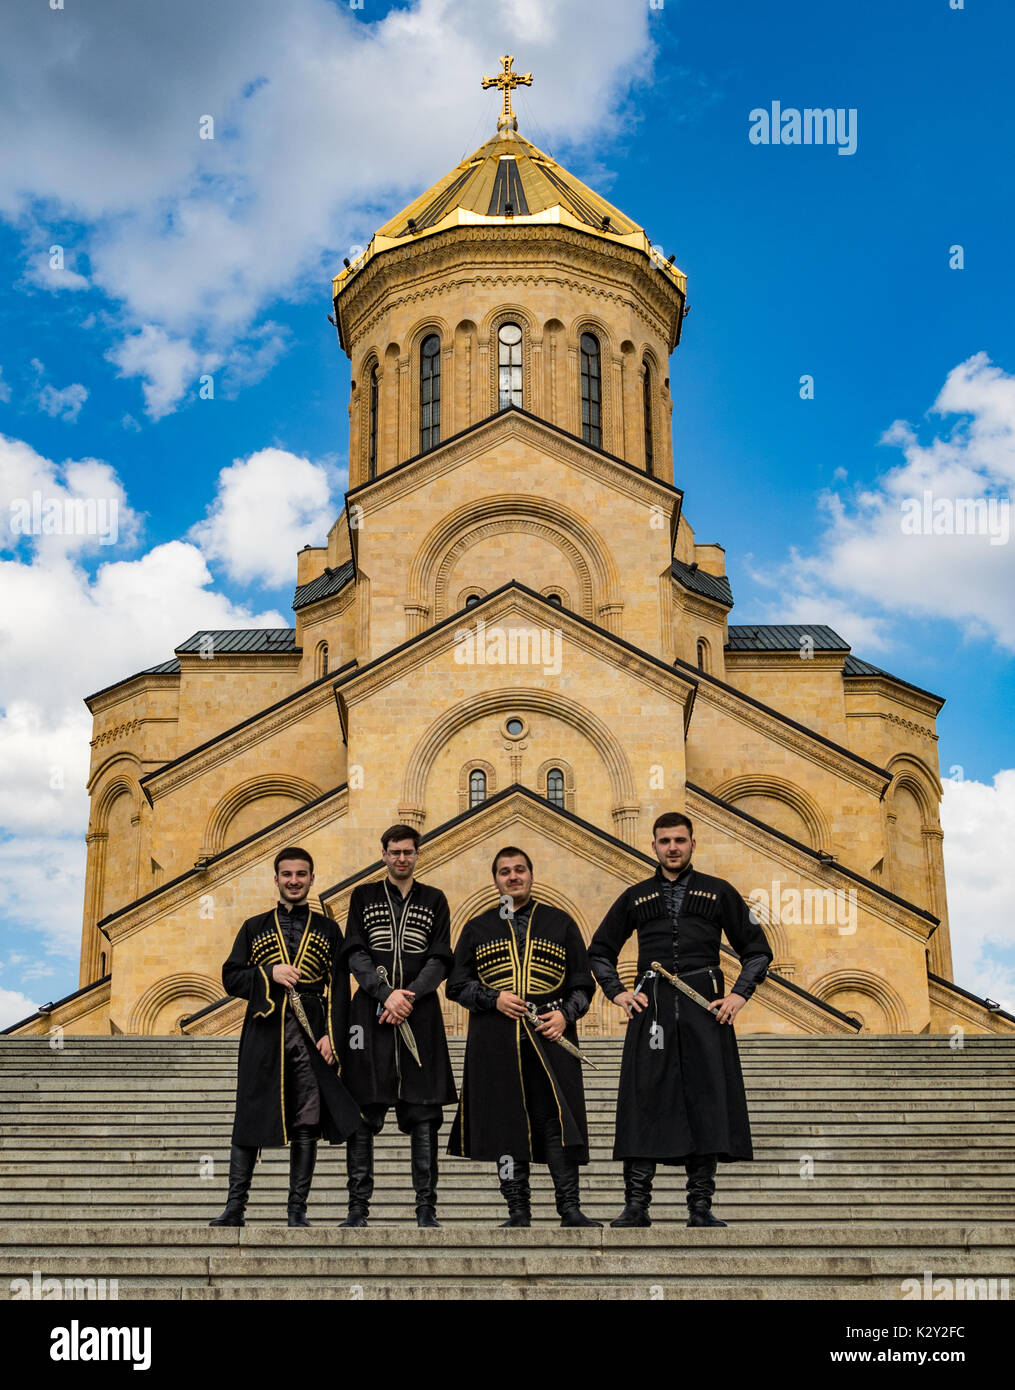 Les garçons posent devant l'église orthodoxe géorgienne de Metekhi à Tbilissi (Géorgie) le 8 juin 2017 Banque D'Images